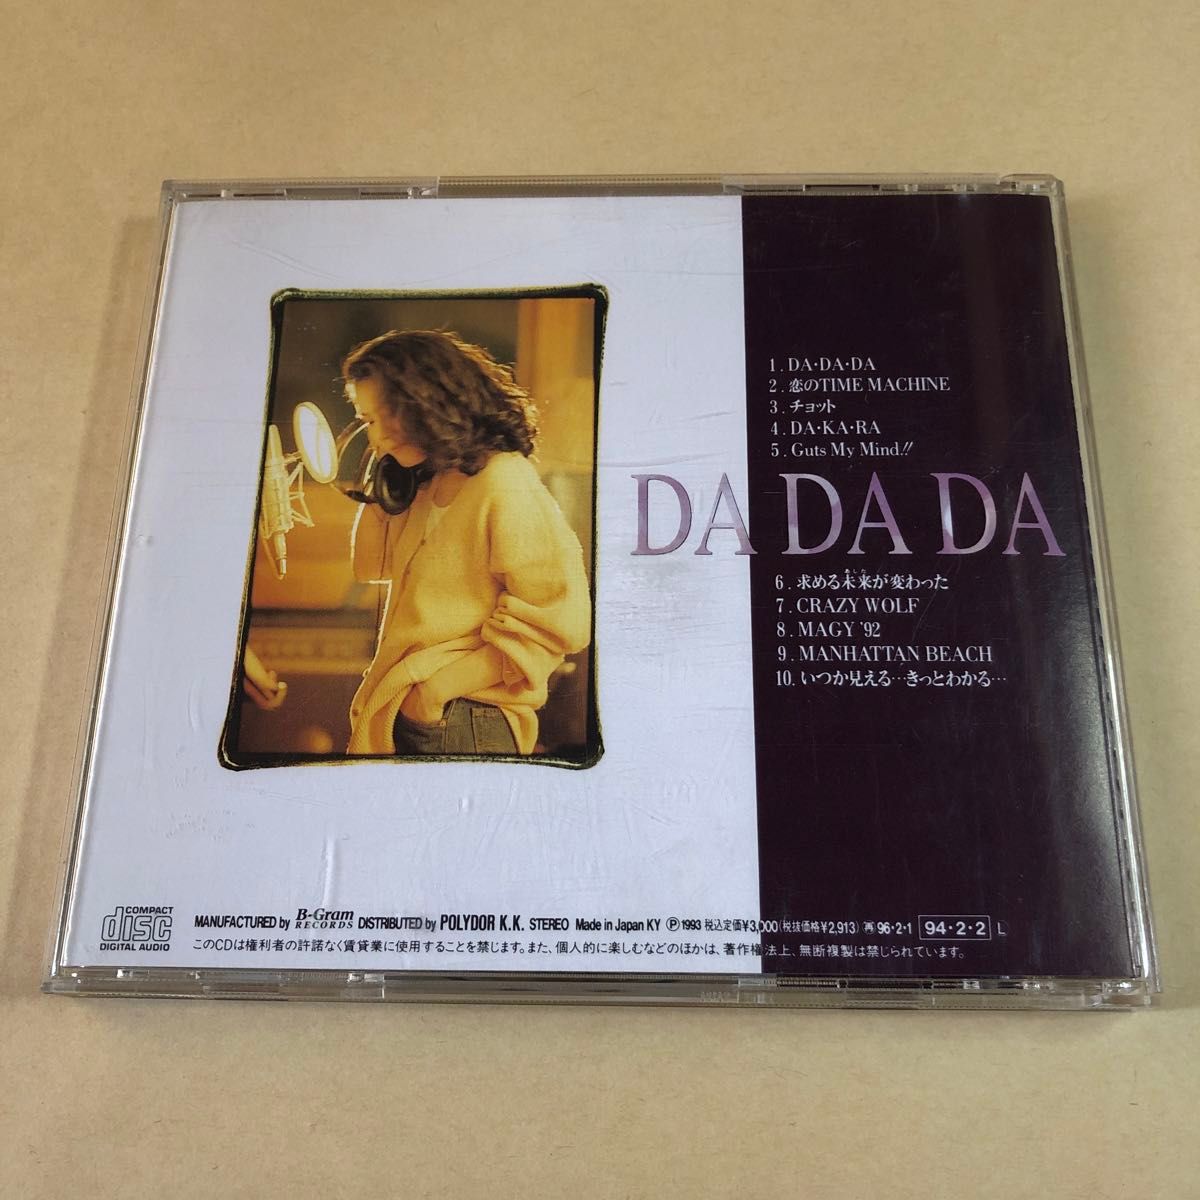 大黒摩季 1CD「DA DA DA」